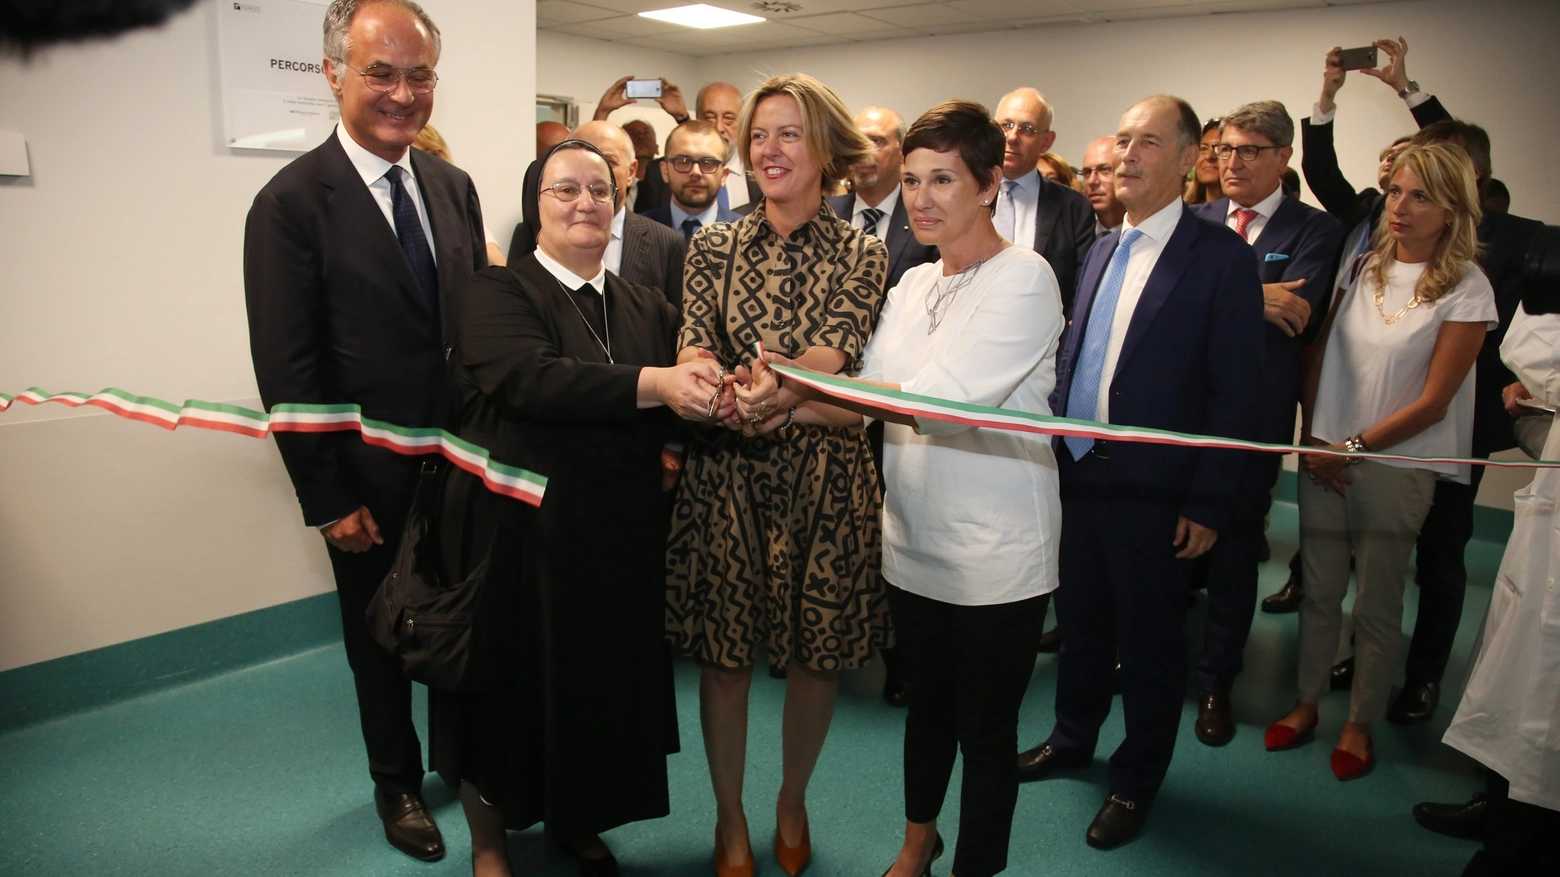 Il ministro della Sanità in visita a Brescia promuove la sanità lombarda e candida Milano come nuova sede dell'Ema